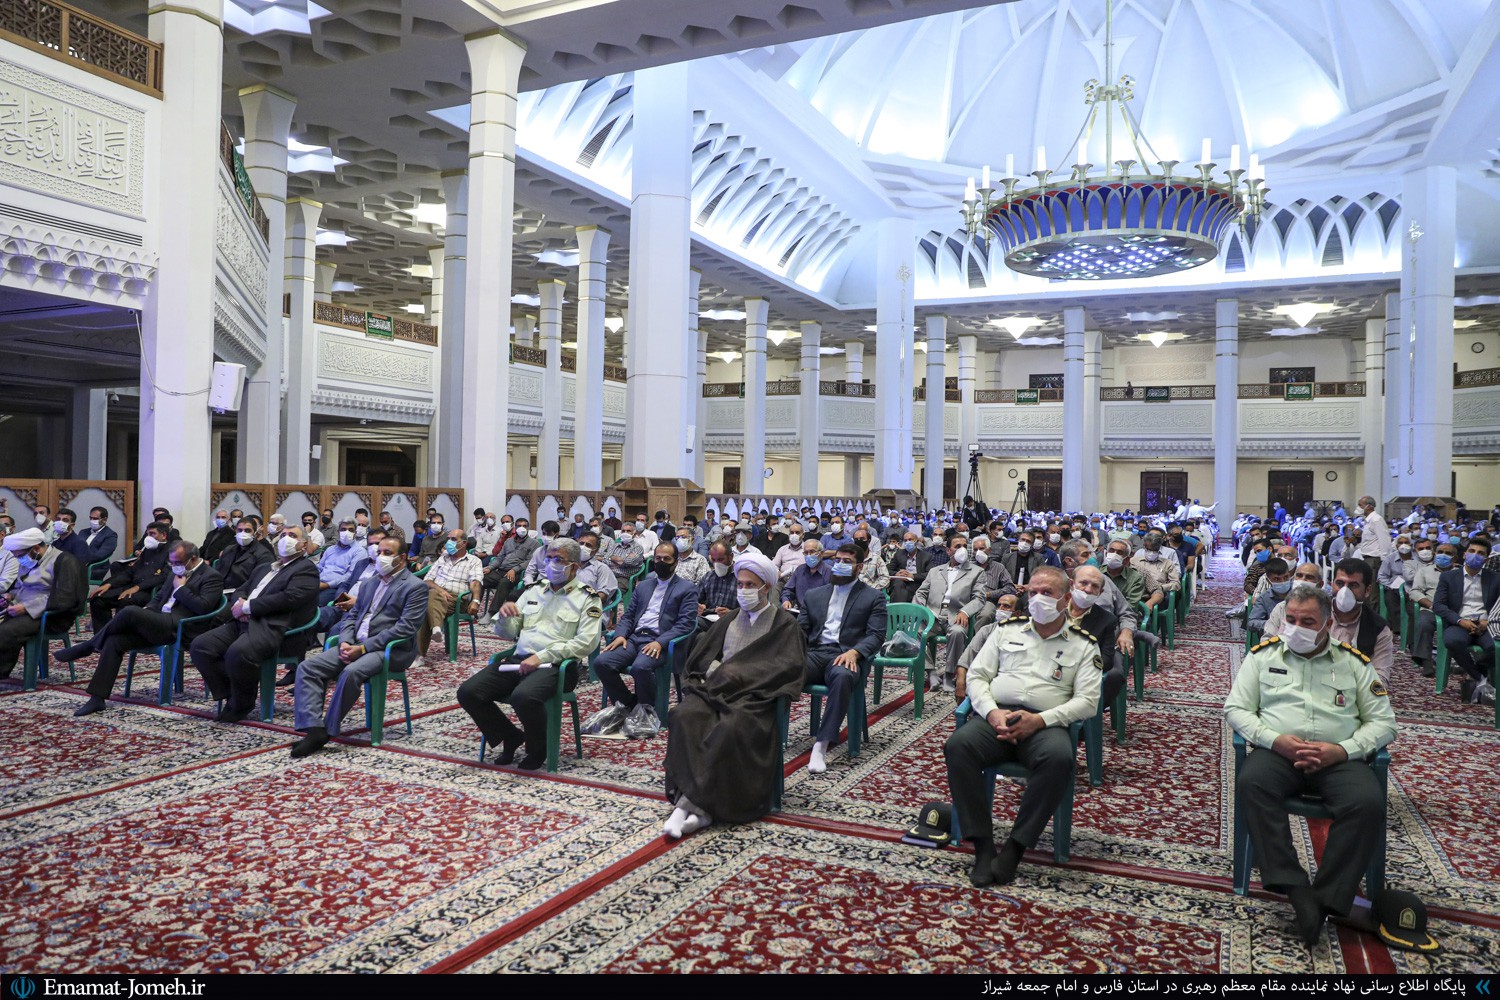 جلسه هماهنگی هیات مذهبی شیراز با حضور آیت الله دژکام